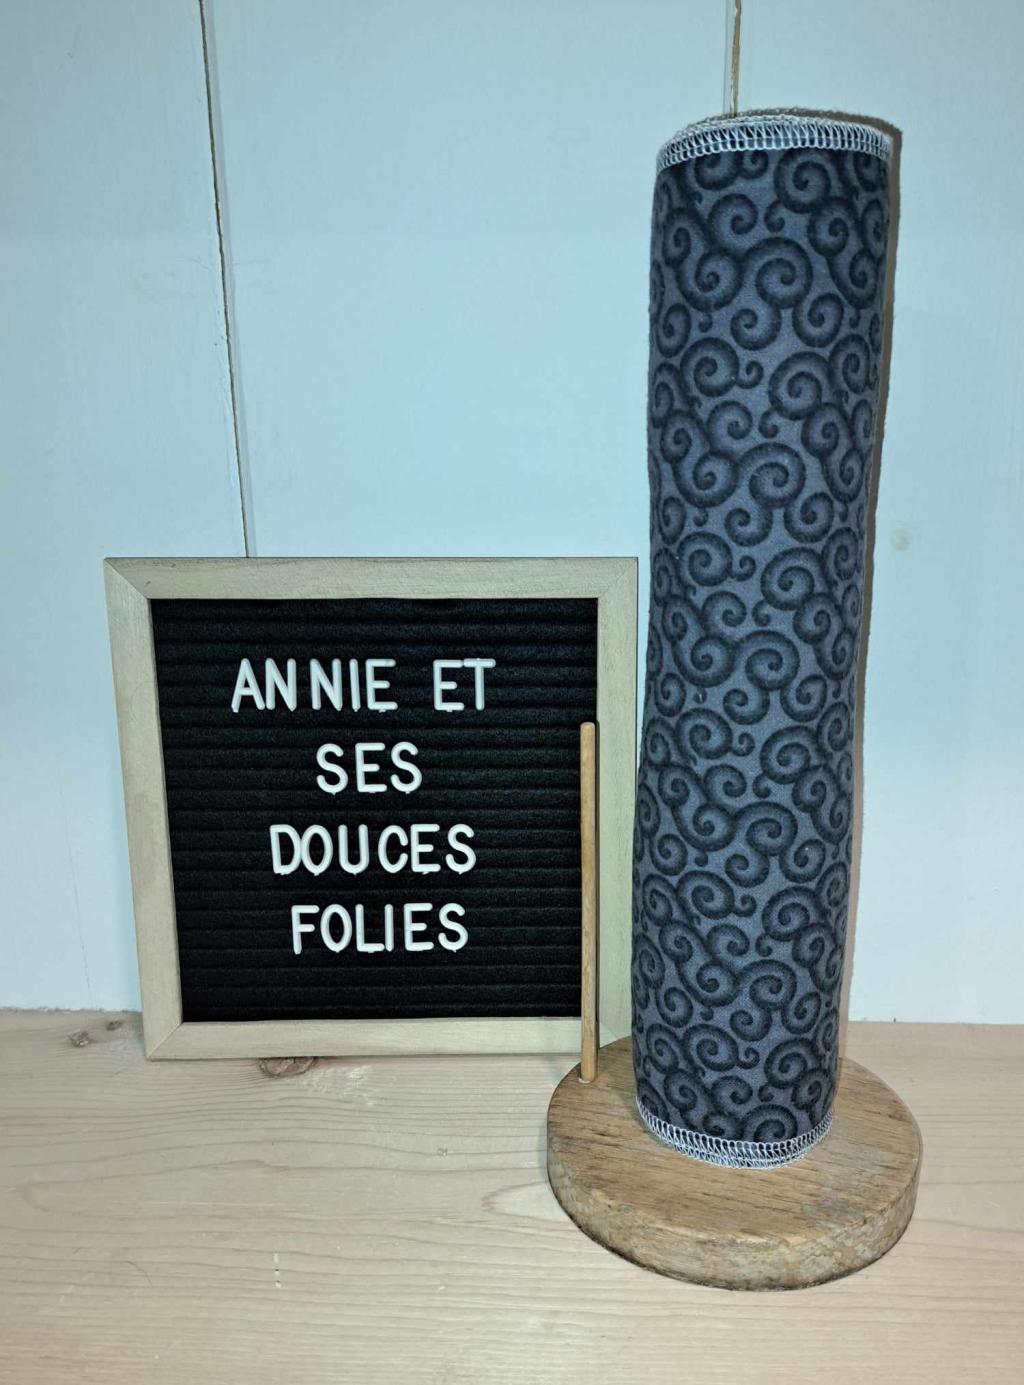 Encouragez local grâce à notre boutique en ligne gratuite pour les artisans du Québec tel que Annie et ses douces folies. Annie et ses douces folies est un artisan du Québec offrant des produits artisanaux québécois de qualité.